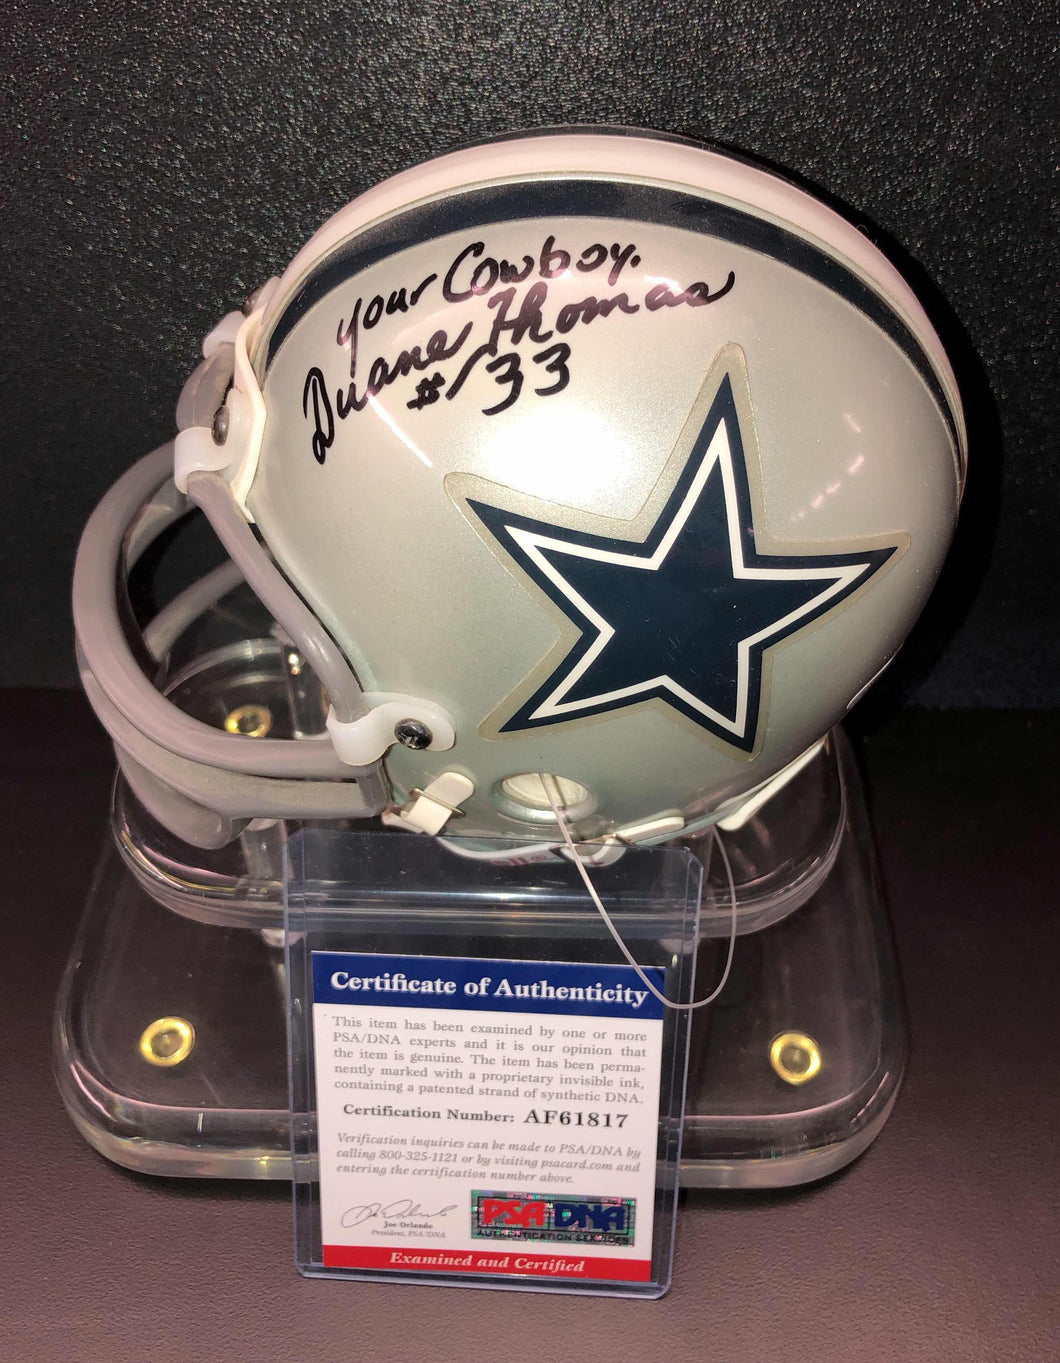 Duane Thomas Signed Dallas Cowboys Mini Helmet PSA/DNA Authentication Services Certified